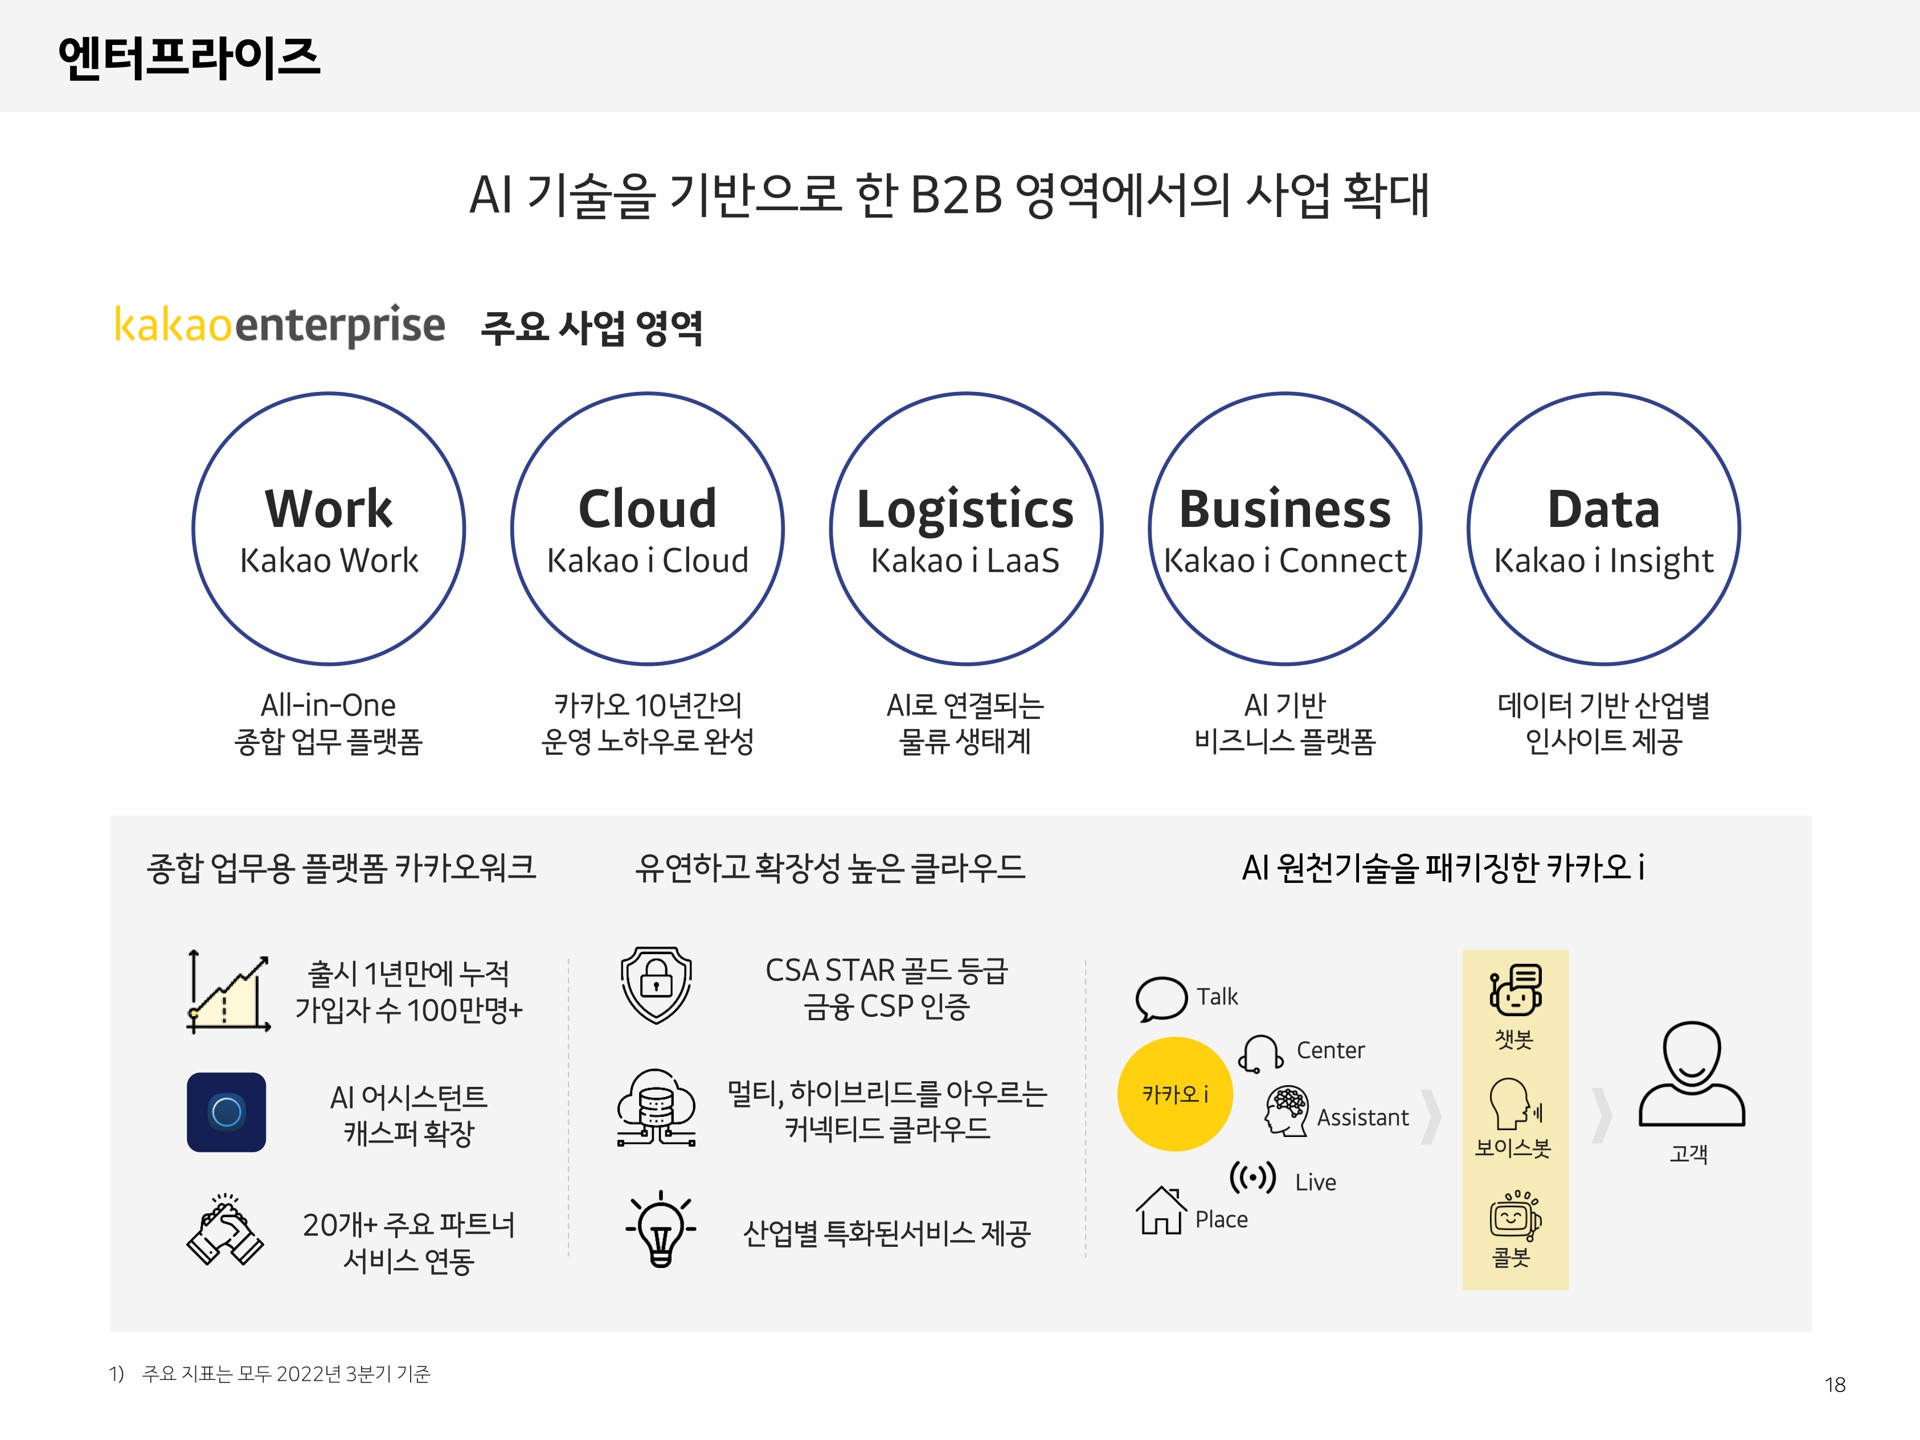 work cloud logistics business data sams enterprise a he do hele | Kakao